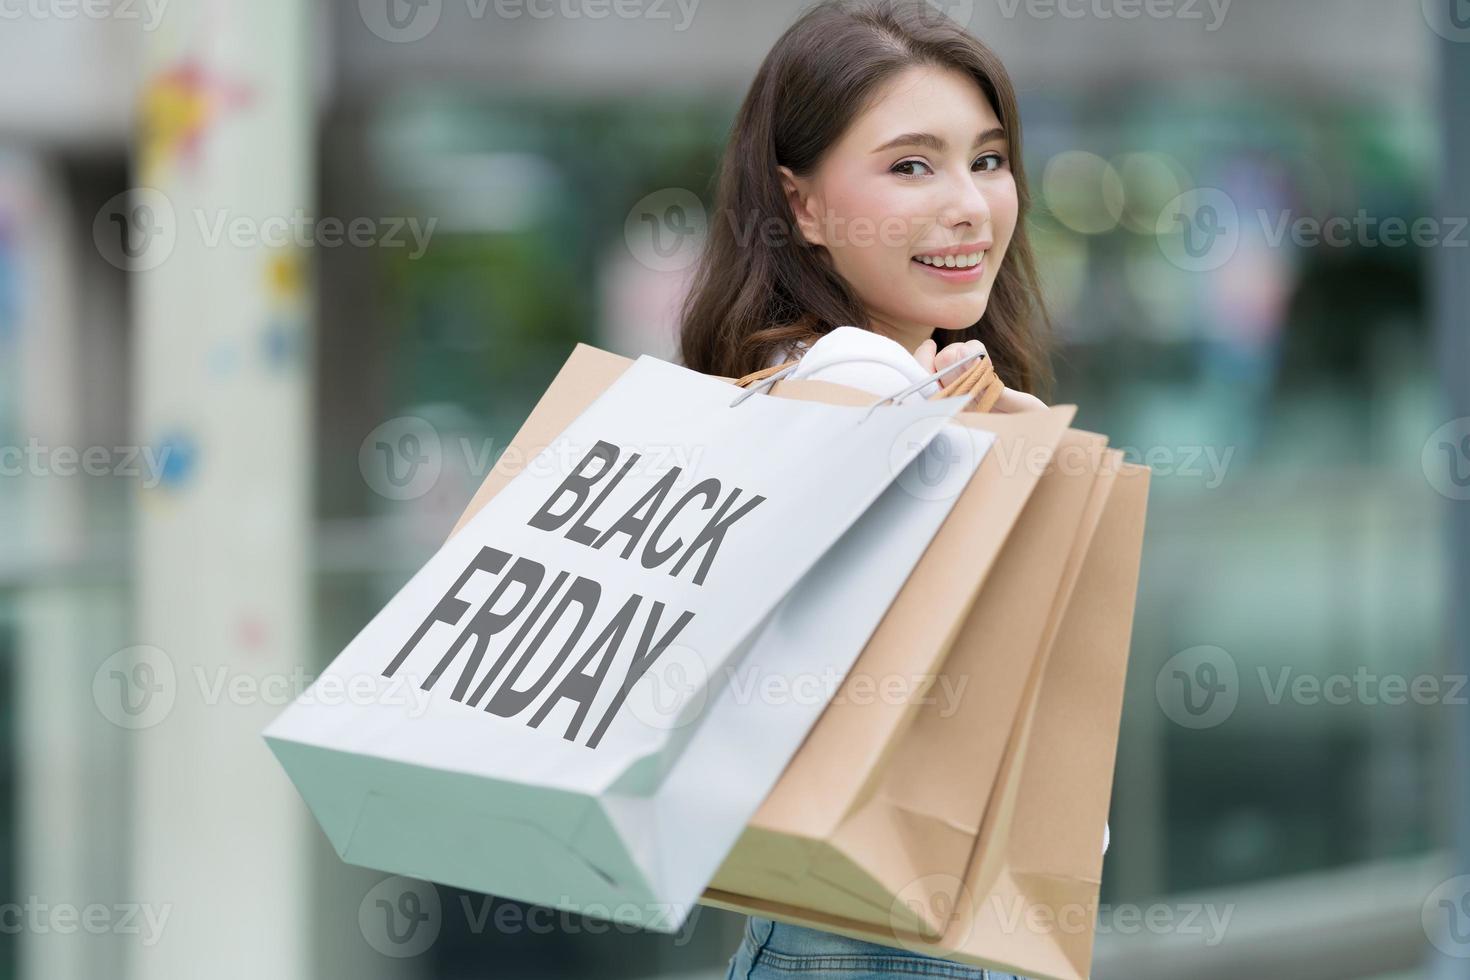 svart fredagskoncept, kvinna som håller många påsar och ler i butiken under shoppingprocessen foto